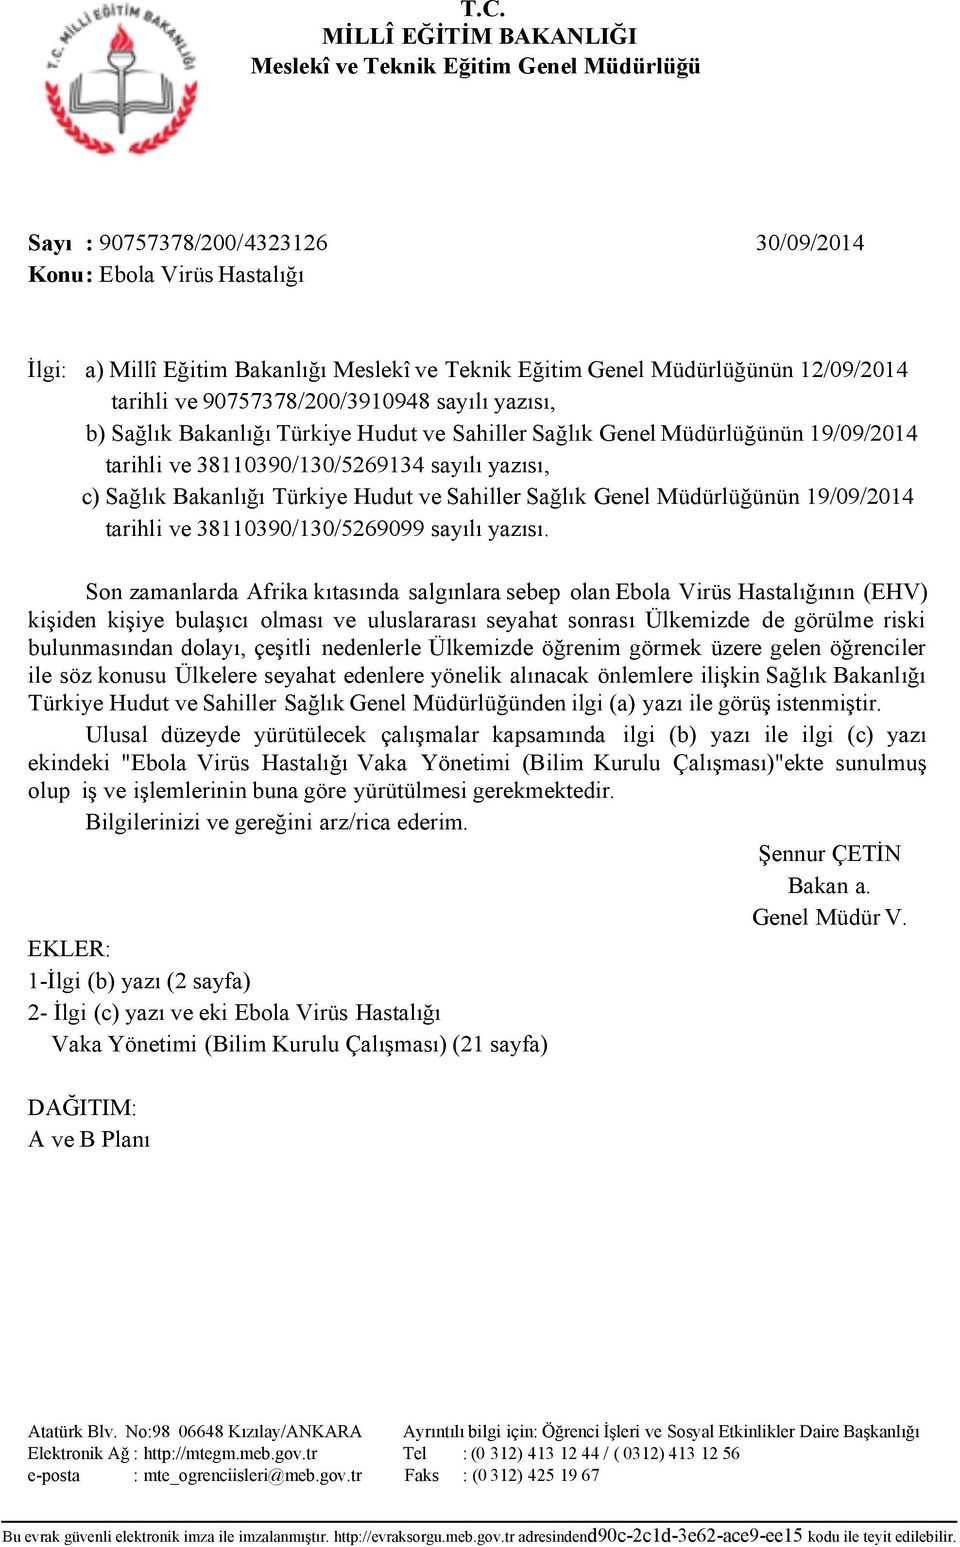 yazısı, c) Sağlık Bakanlığı Türkiye Hudut ve Sahiller Sağlık Genel Müdürlüğünün 19/09/2014 tarihli ve 38110390/130/5269099 sayılı yazısı.